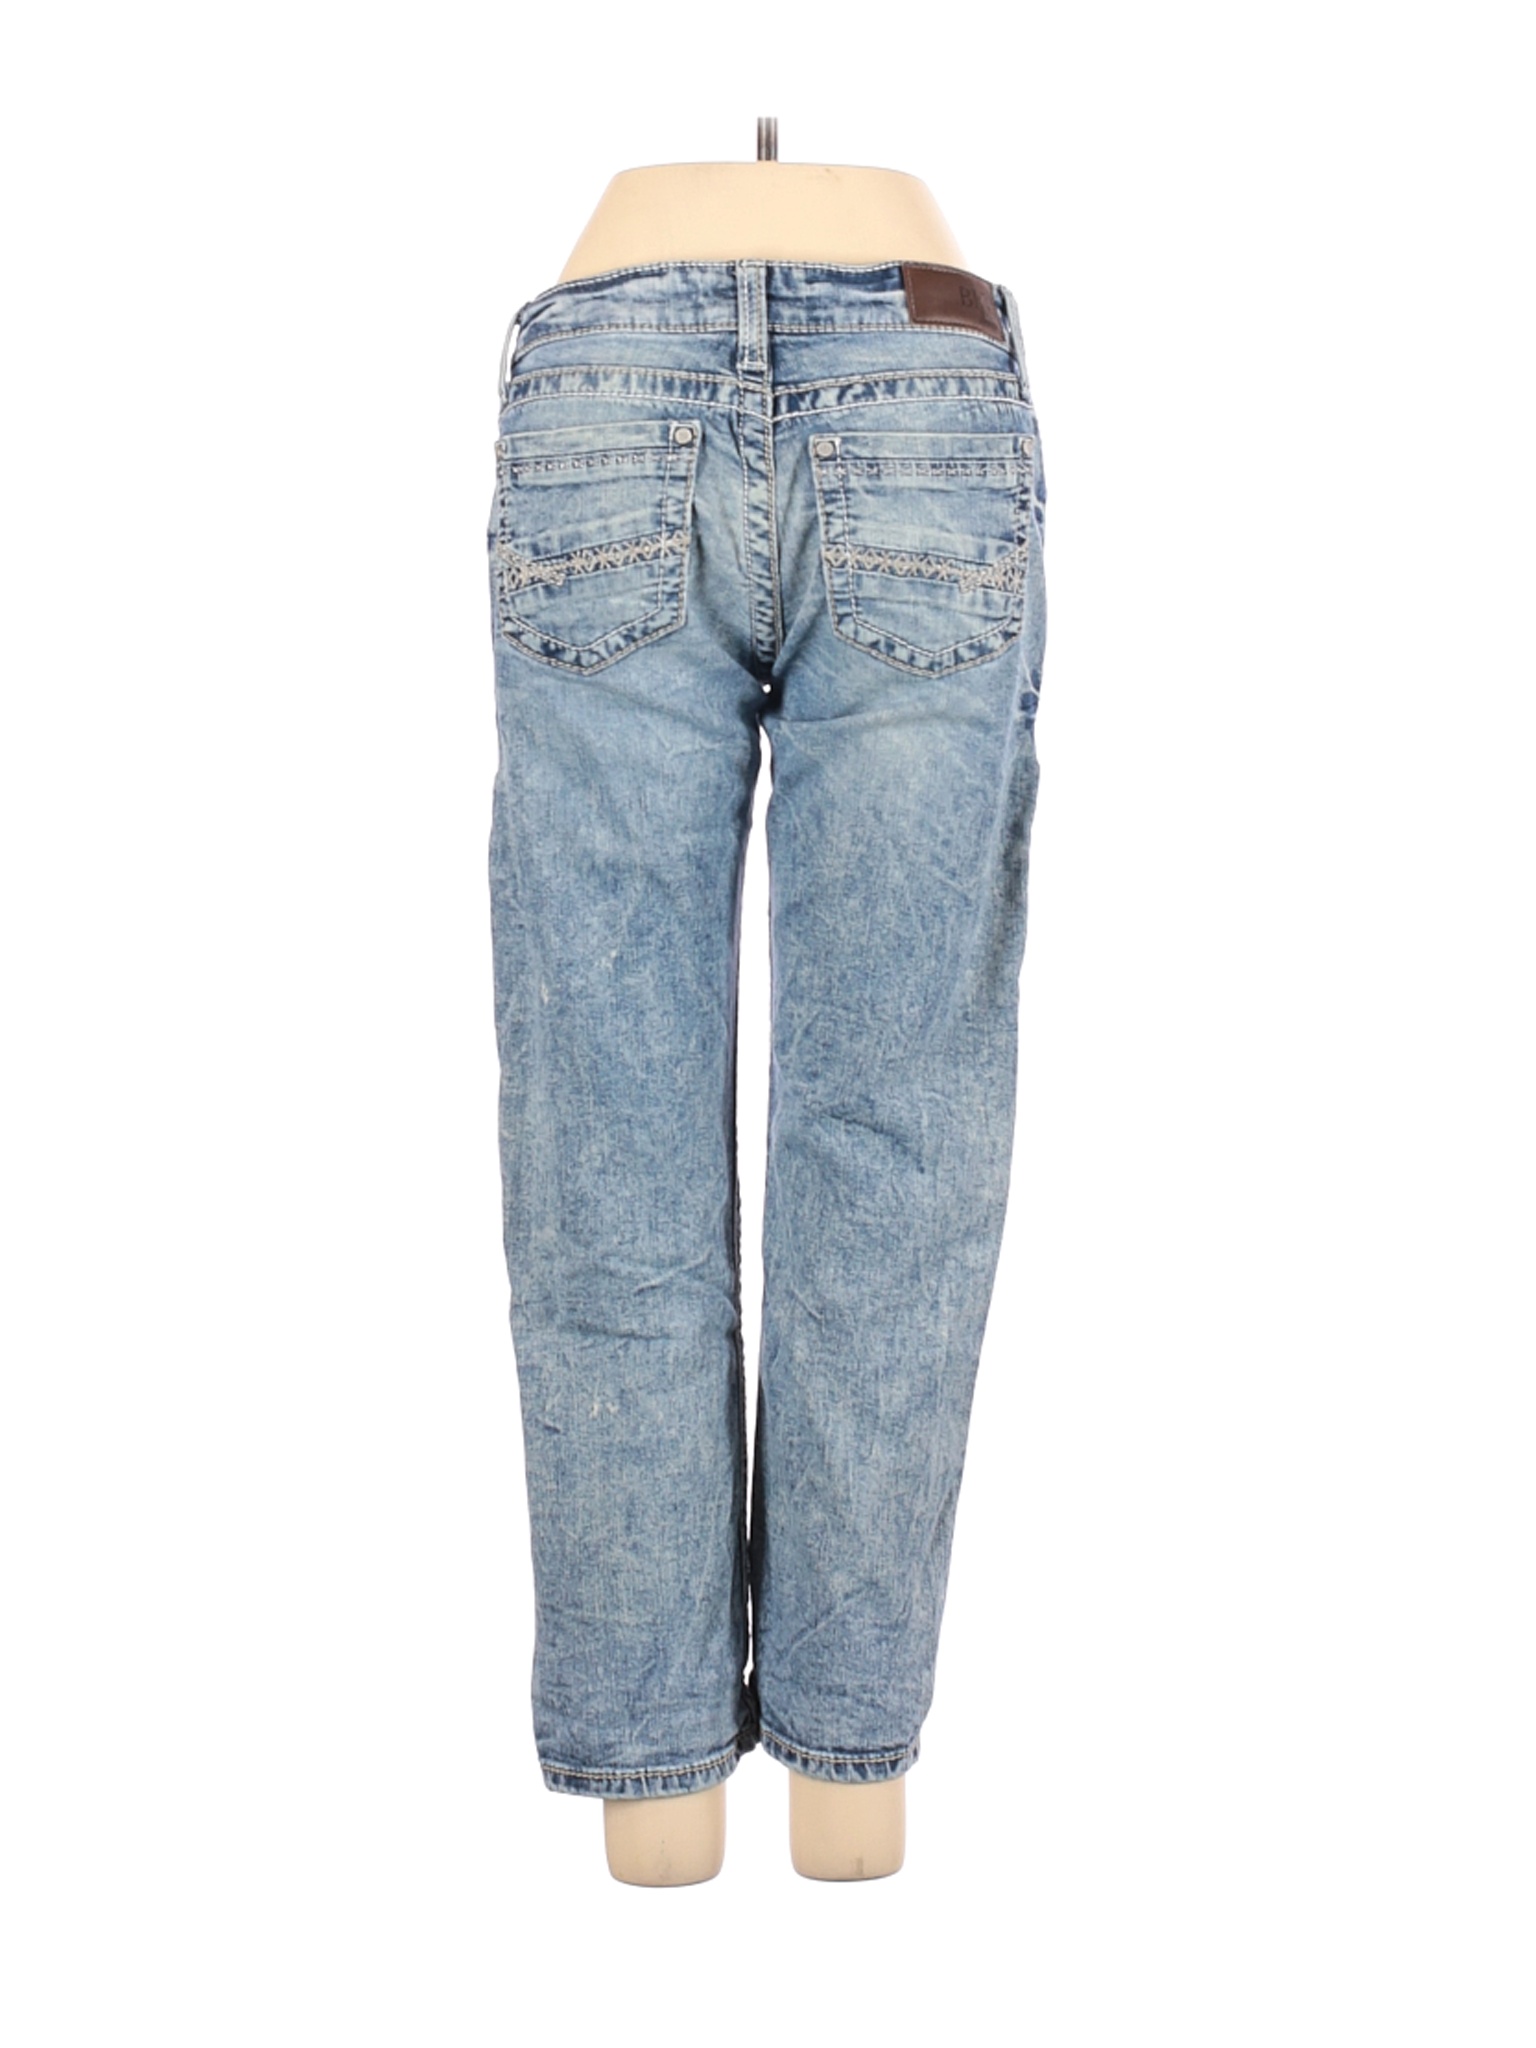 bke jeans price